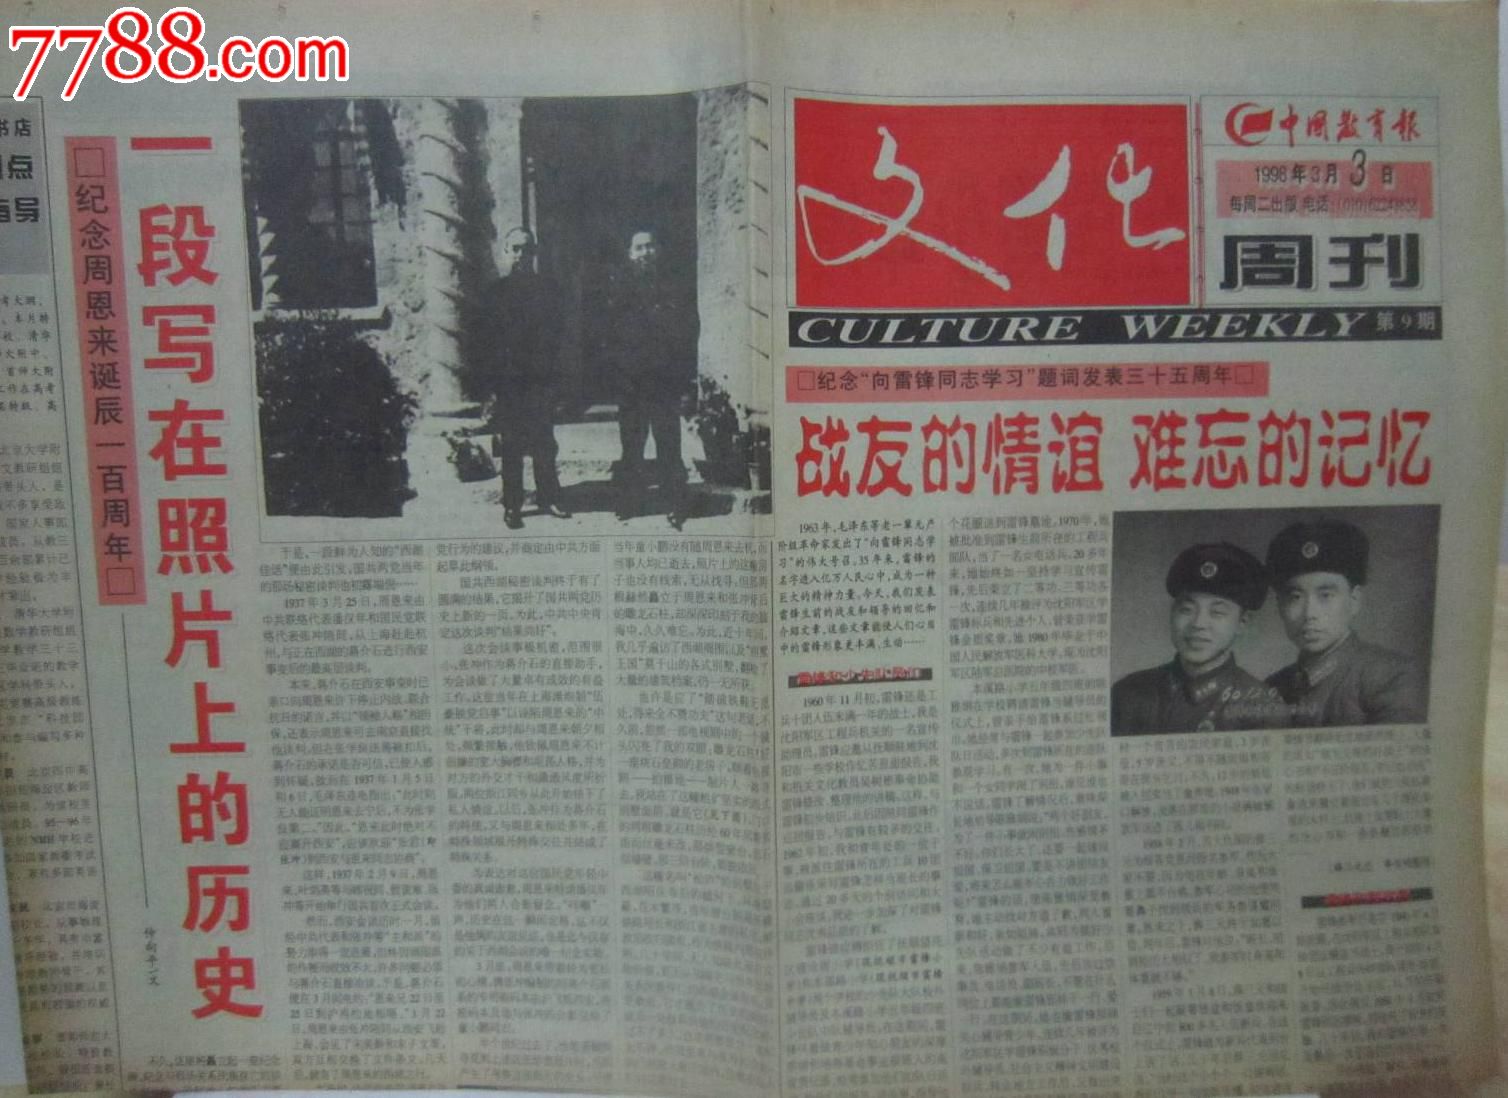 中国教育报文化周刊1998.3.3-纪念周恩来百年